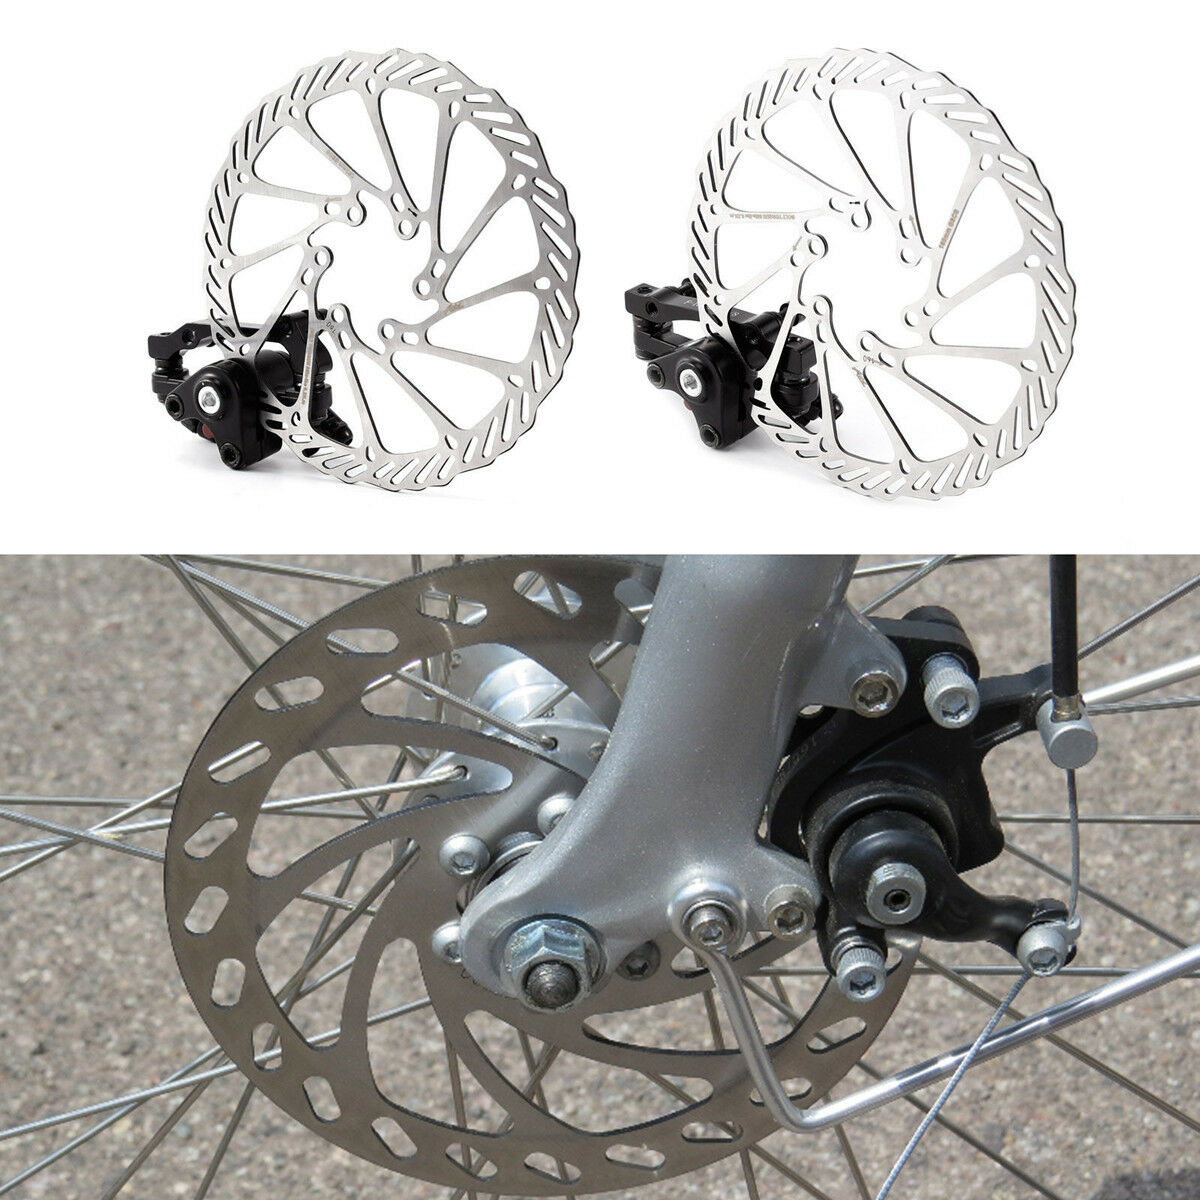 Bike Disc Brake Front & Rear Disc 160 Mm Rotor Brake Kit For Mountain Bicycle